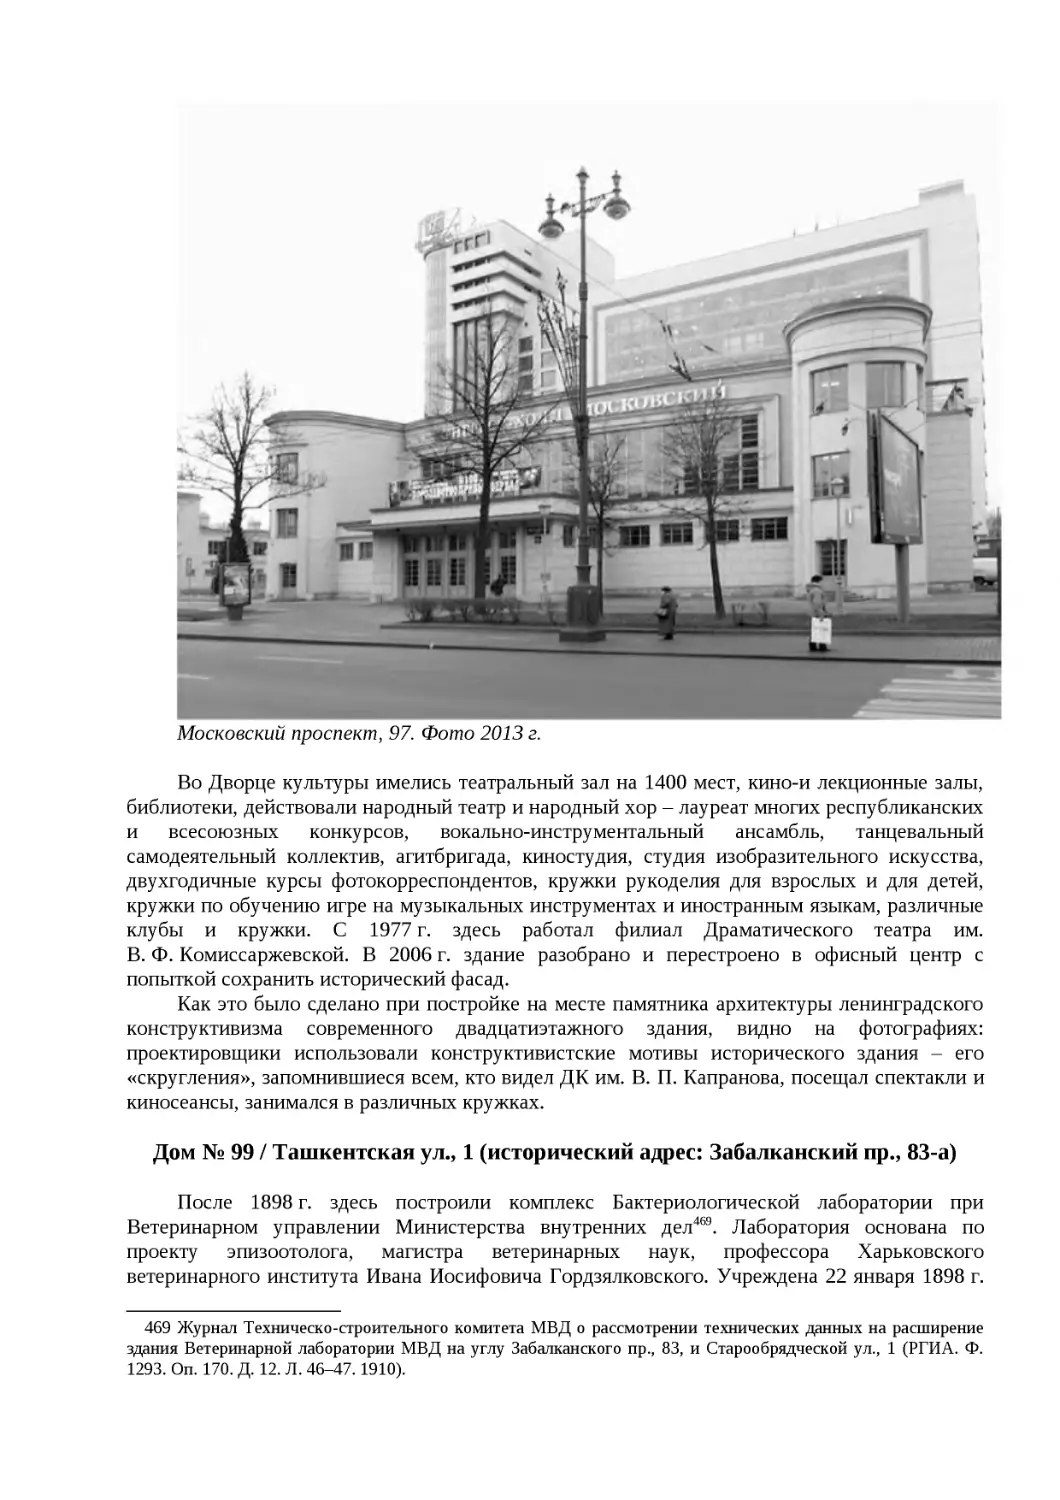 ﻿Дом № 99 / Ташкентская ул., 1 øисторический адрес: Забалканский пр., 83-а